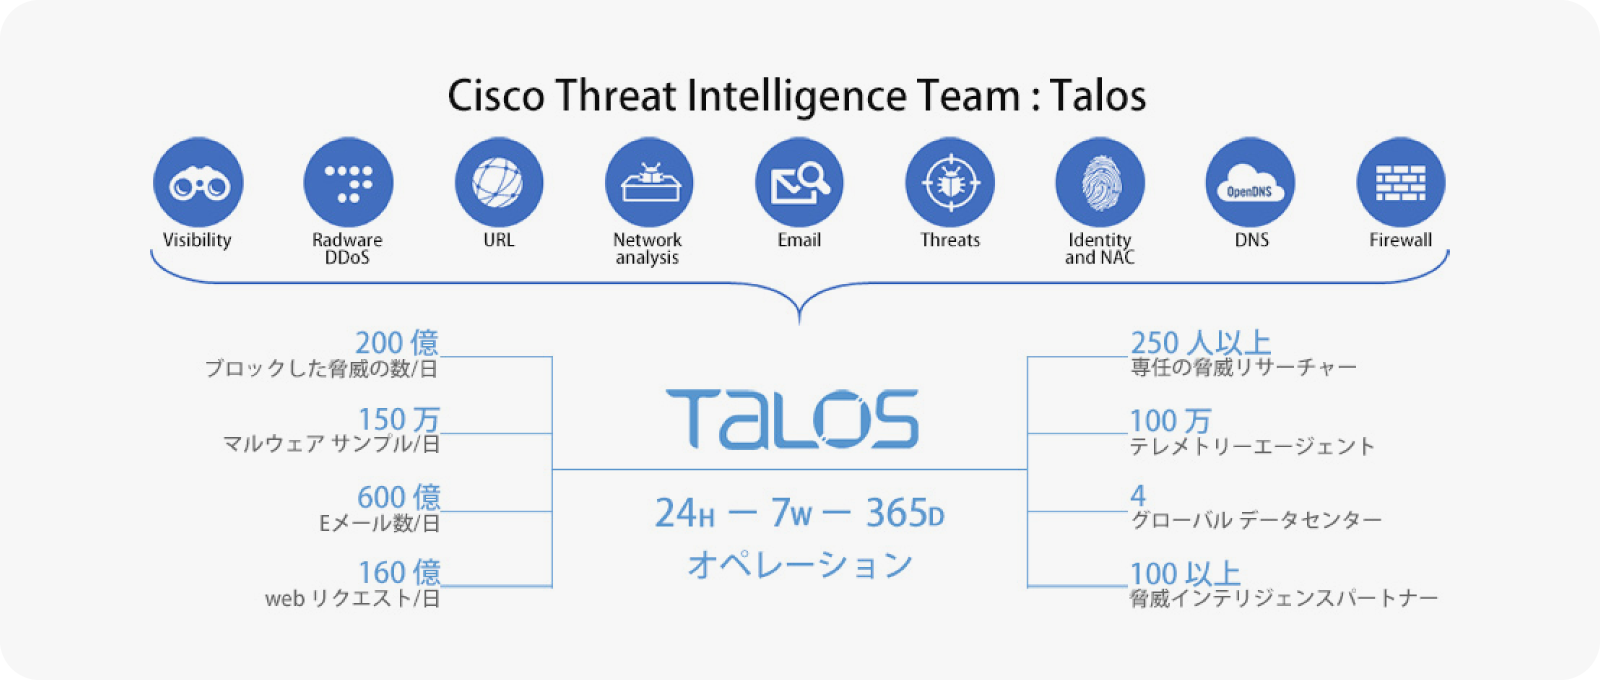 Cisco Threat Intelligence Team: Talosの説明。Talosは24H, 7W, 365DオペレーションでVisibility, Radwar DDoS, URL, Network analysis, Email, Threats, Identity and NAC, DNS, Firewallの脅威リサーチをする。ブロックした脅威の数/日：200億、マルウェアサンプル/日：150万、Eメール数/日：600億、Webリクエスト/日：160億、専任の脅威リサーチャー：250人以上、テレメトリーエージェント：100万、グローバルデータセンター：4、脅威インテリジェンスパートナー：100以上